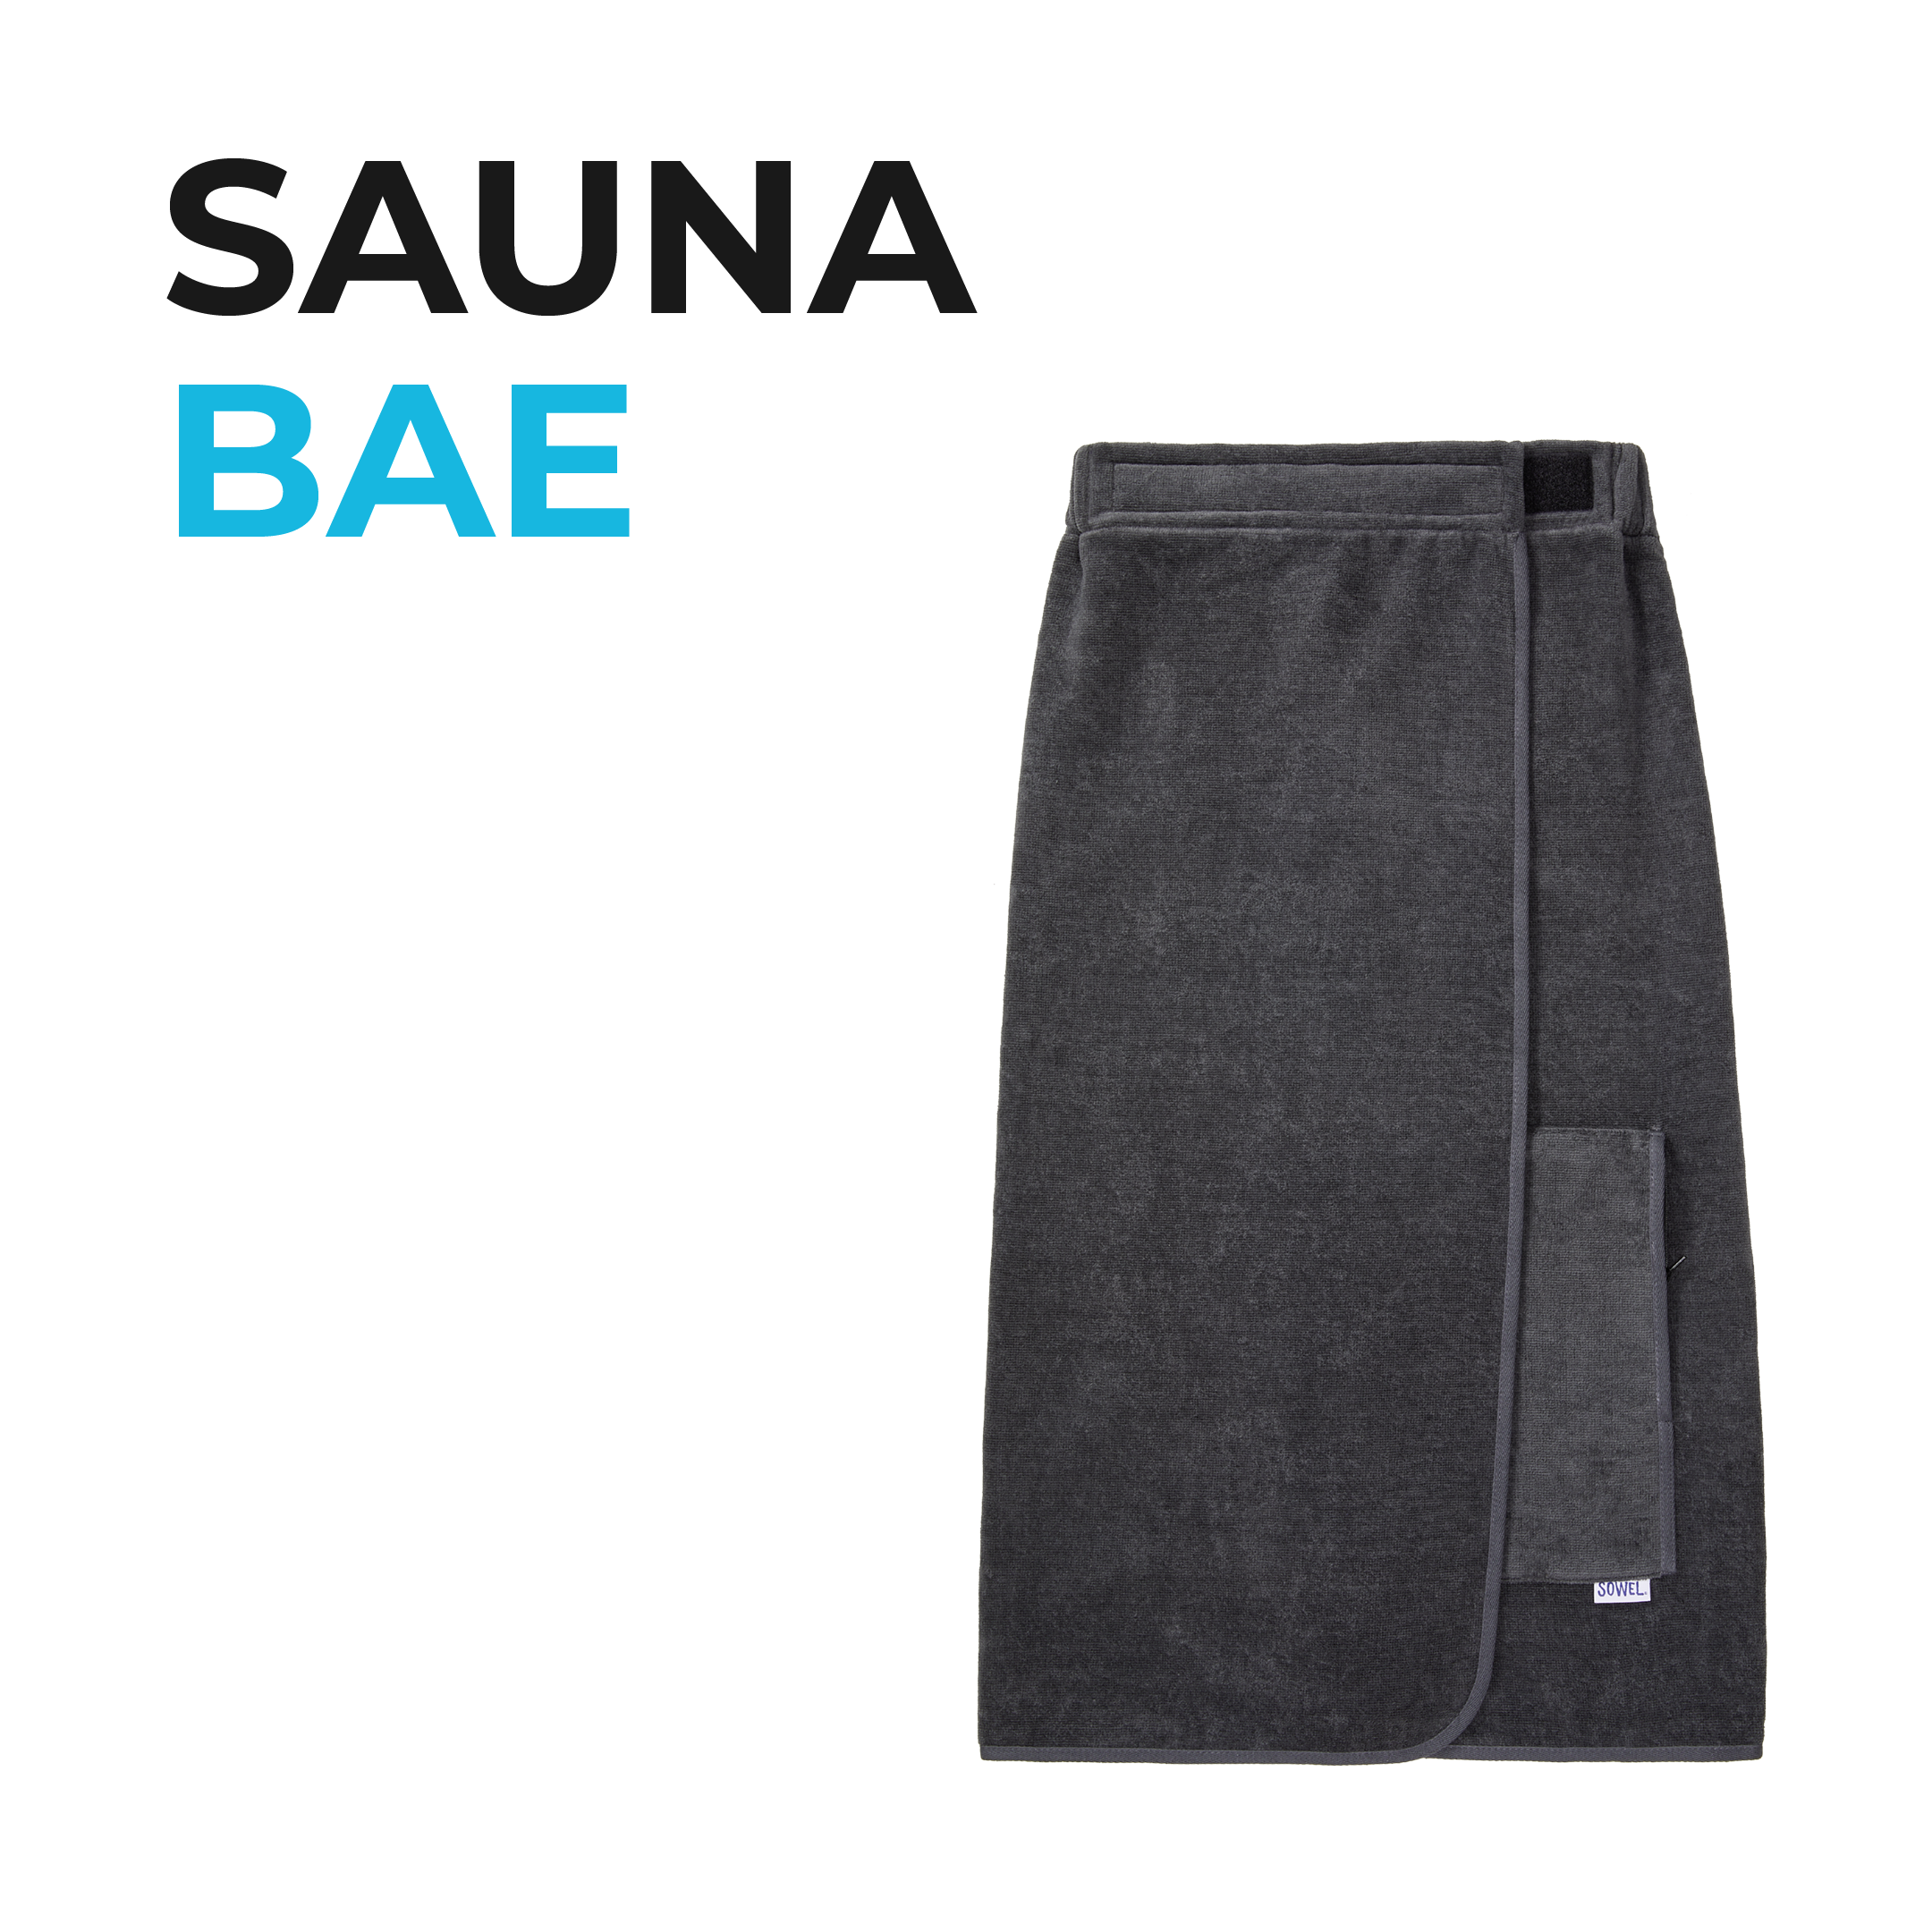 bedeutend Sowel® Sauna Bae - Saunakilt 100% Bio-Baumwolle Damen 